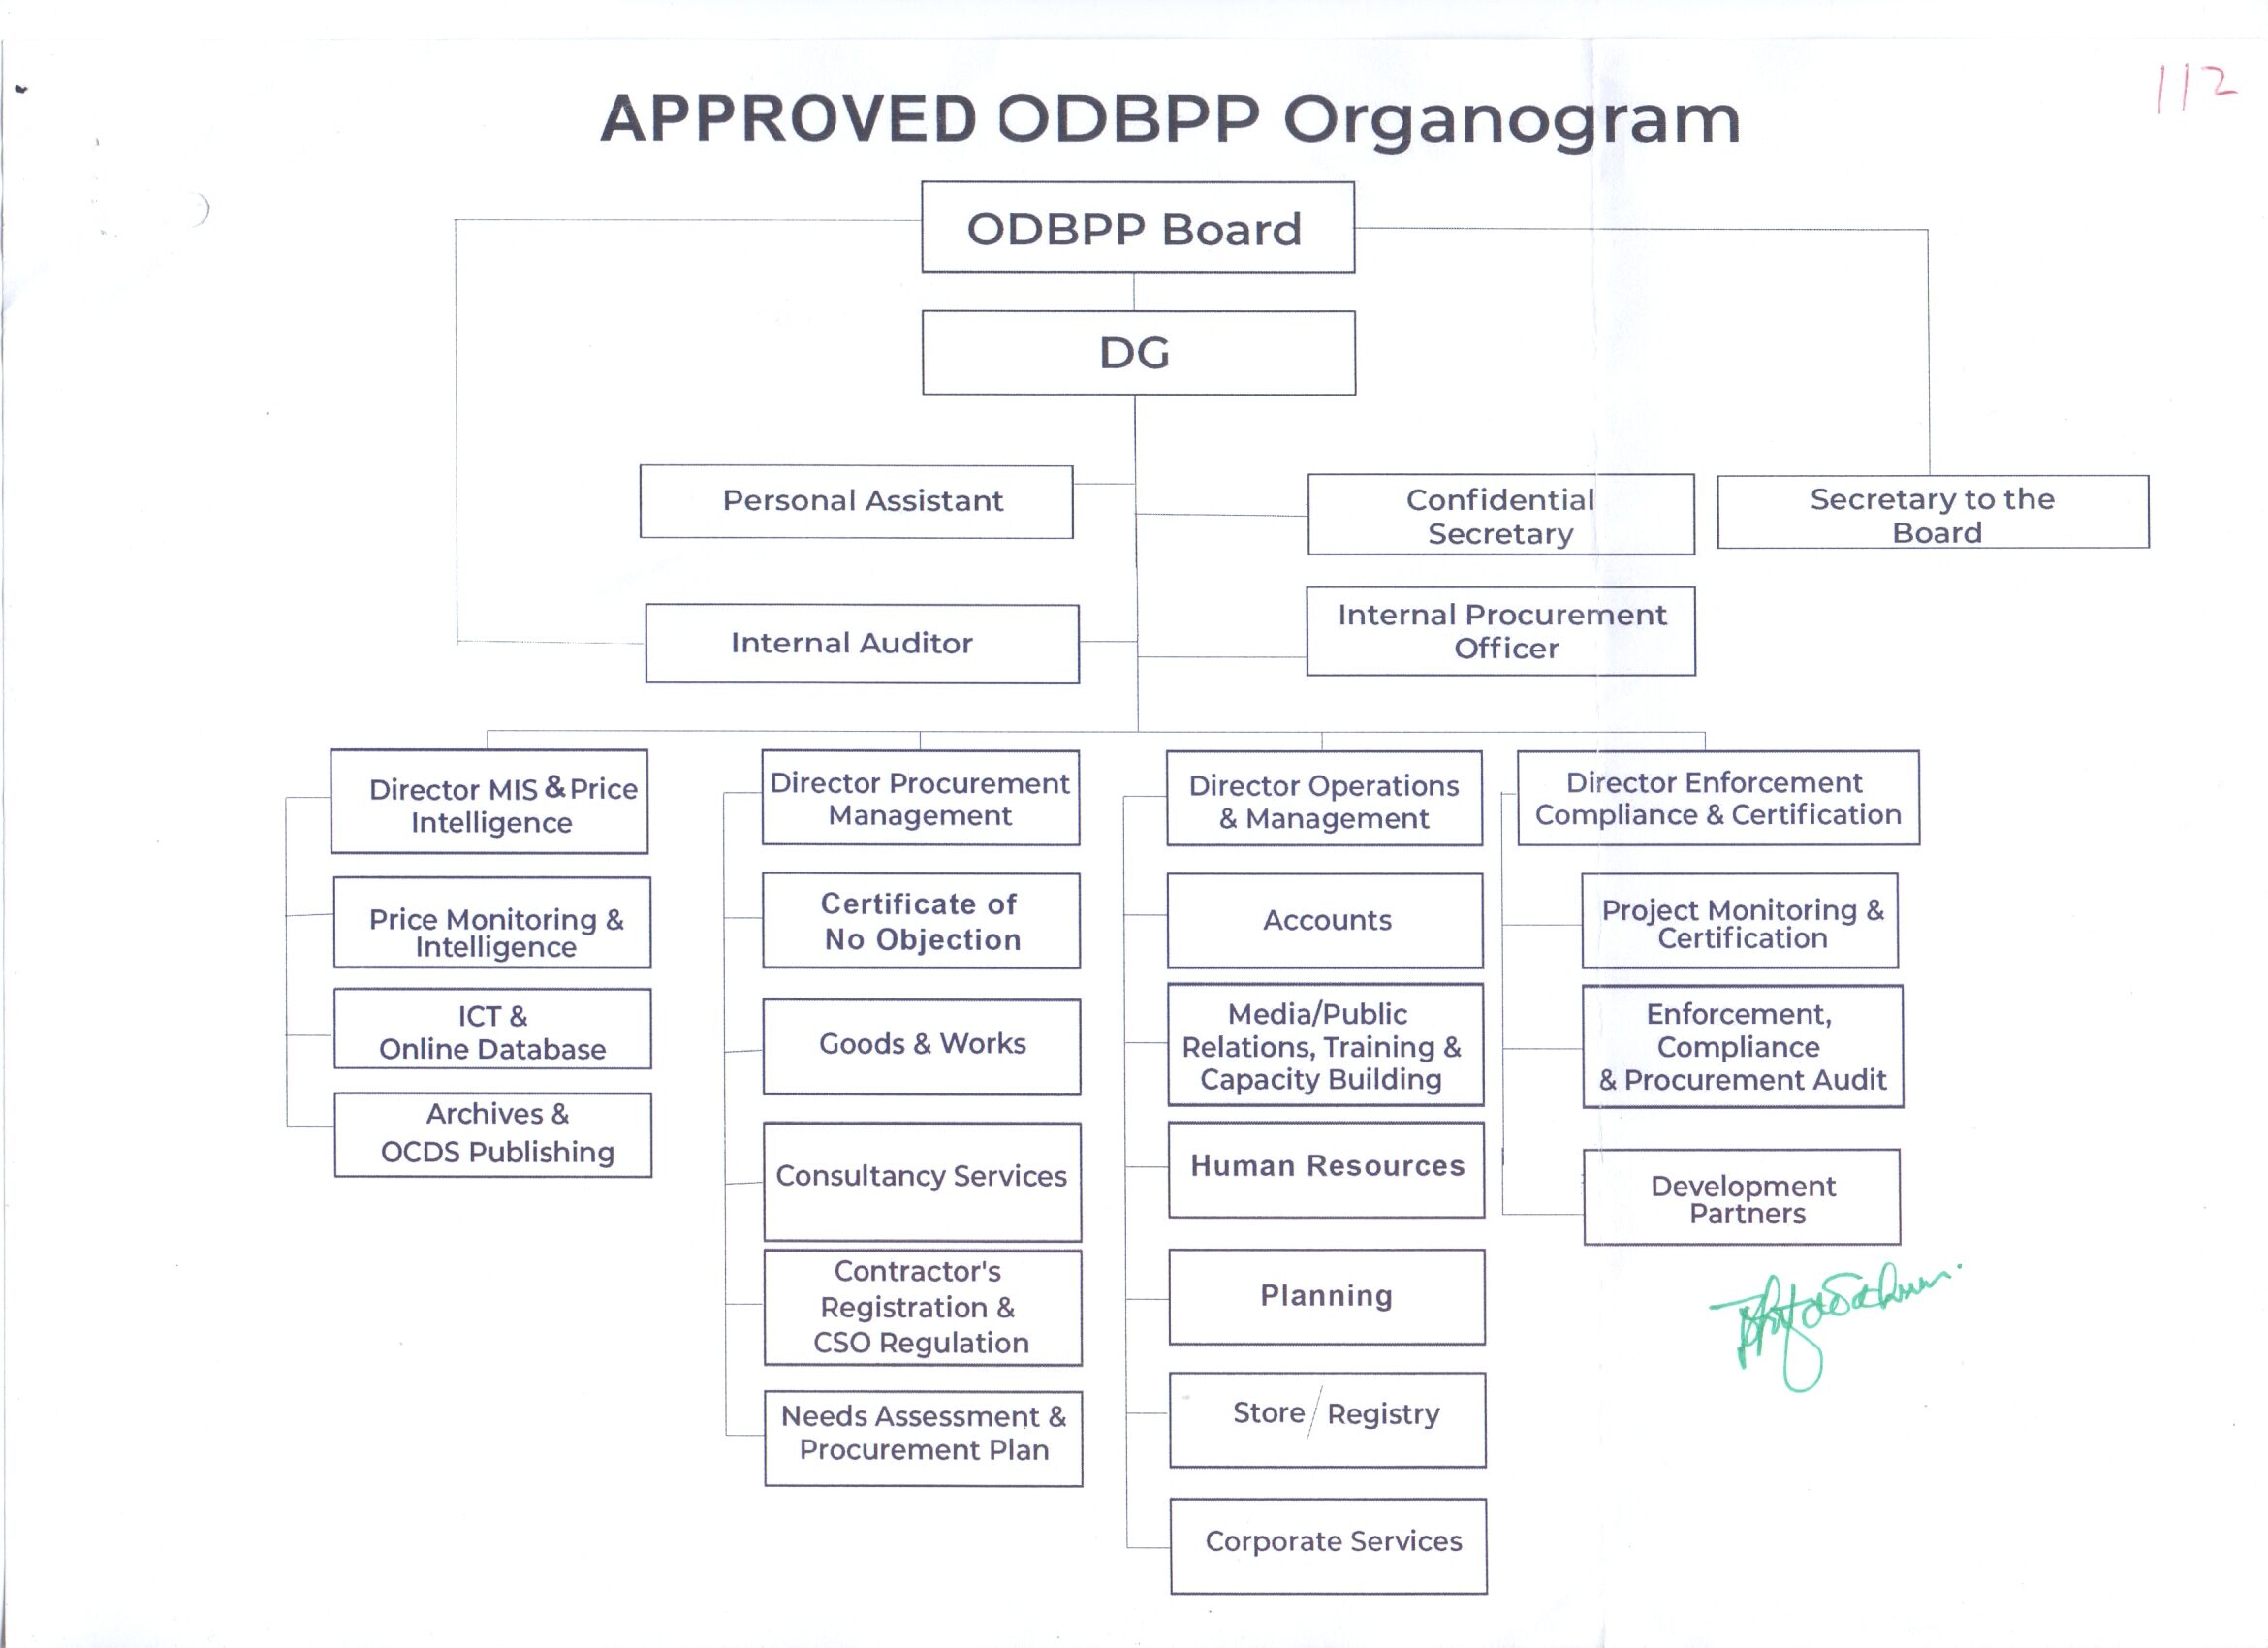 ODBPP Organogram